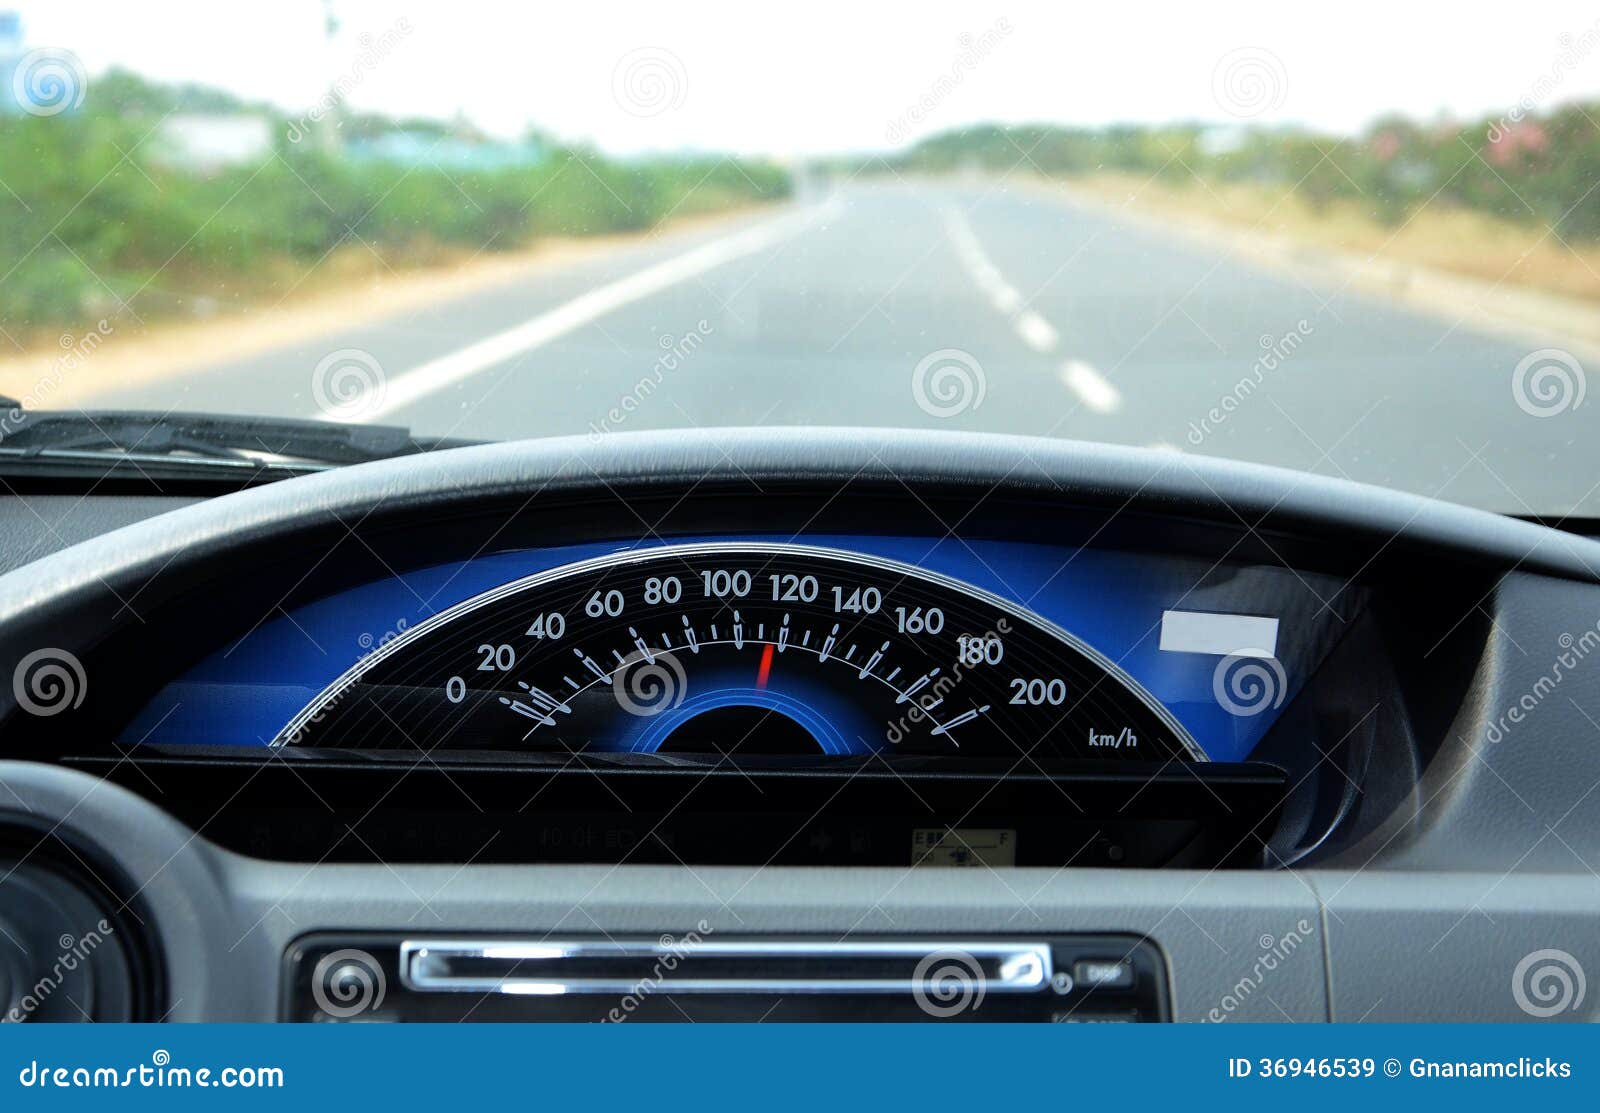 Geschwindigkeitsmesser, Auto-Tachometer Und Zähler Lizenzfreie Fotos,  Bilder und Stock Fotografie. Image 19158743.